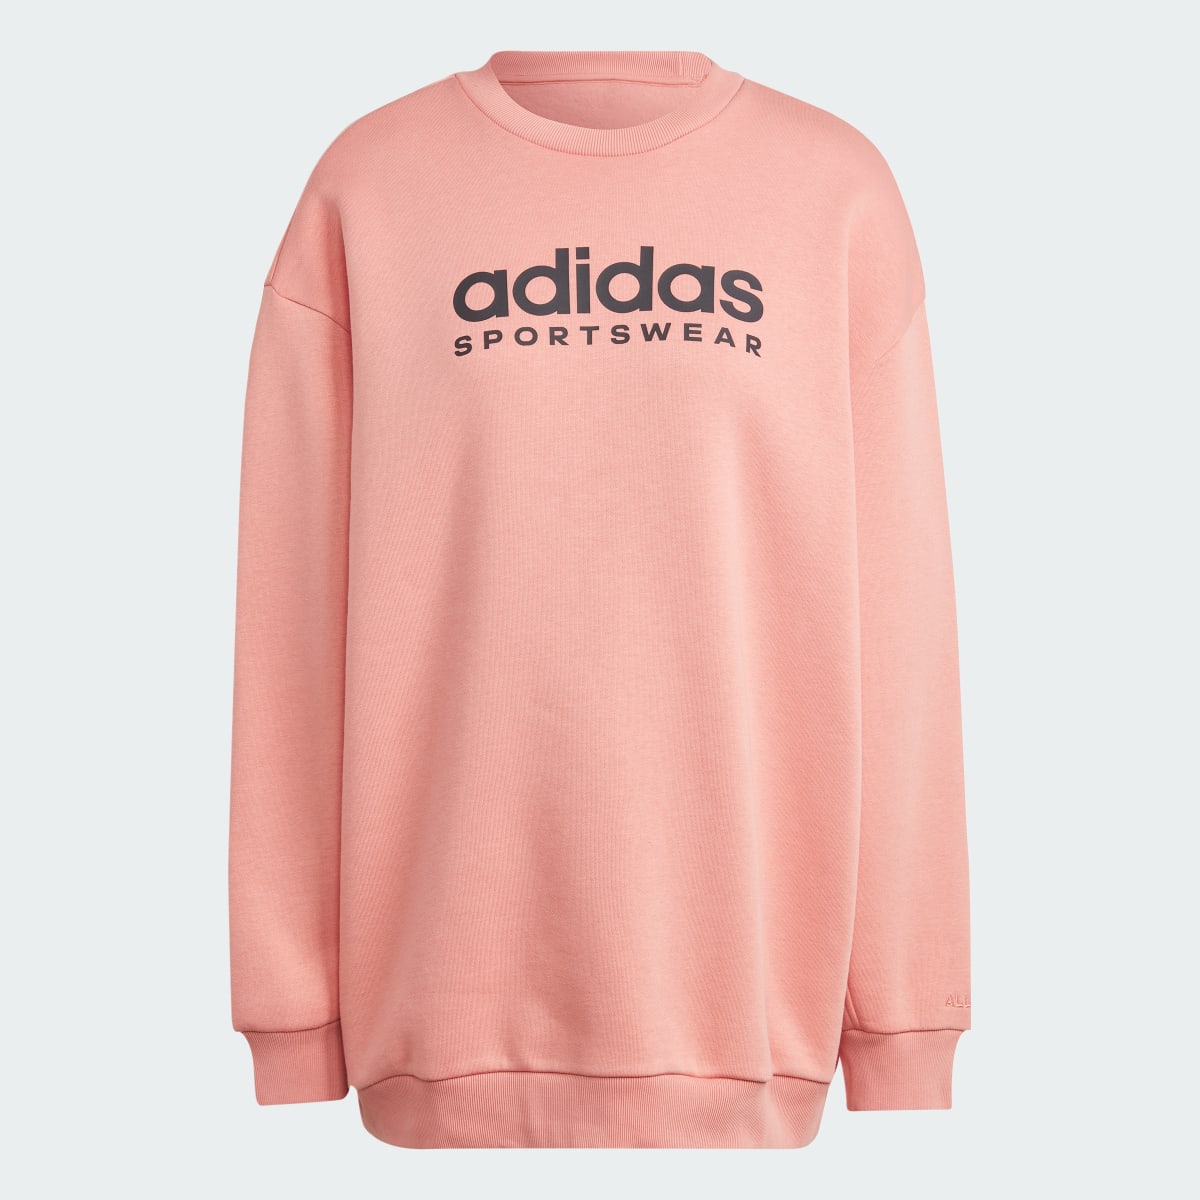 Adidas ALL SZN Fleece Graphic Sweatshirt. 5